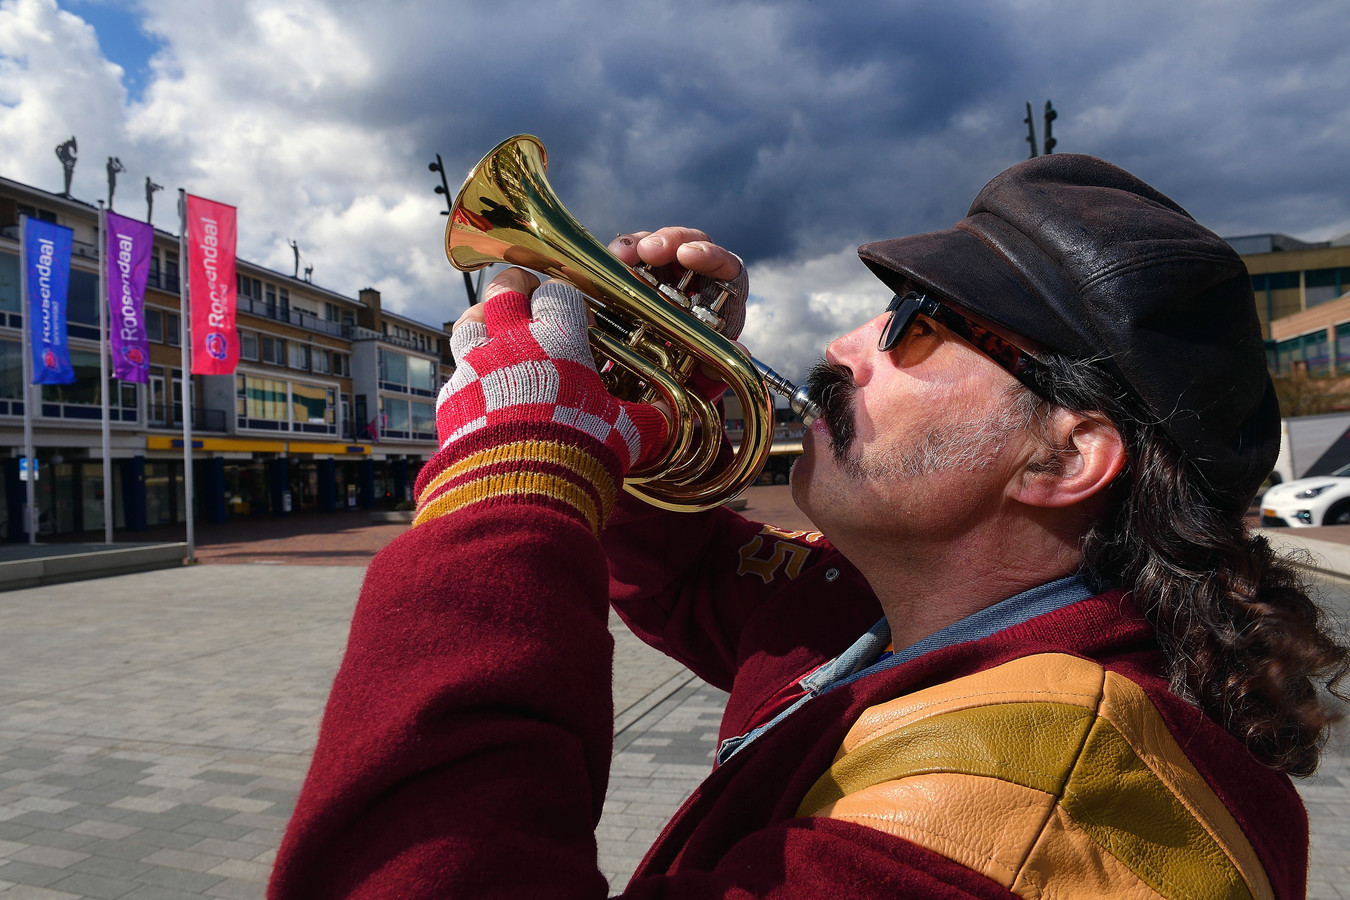 Peter Mathijssen speelt vaak op straat. Nu heeft de politie zijn trompet afgepakt.